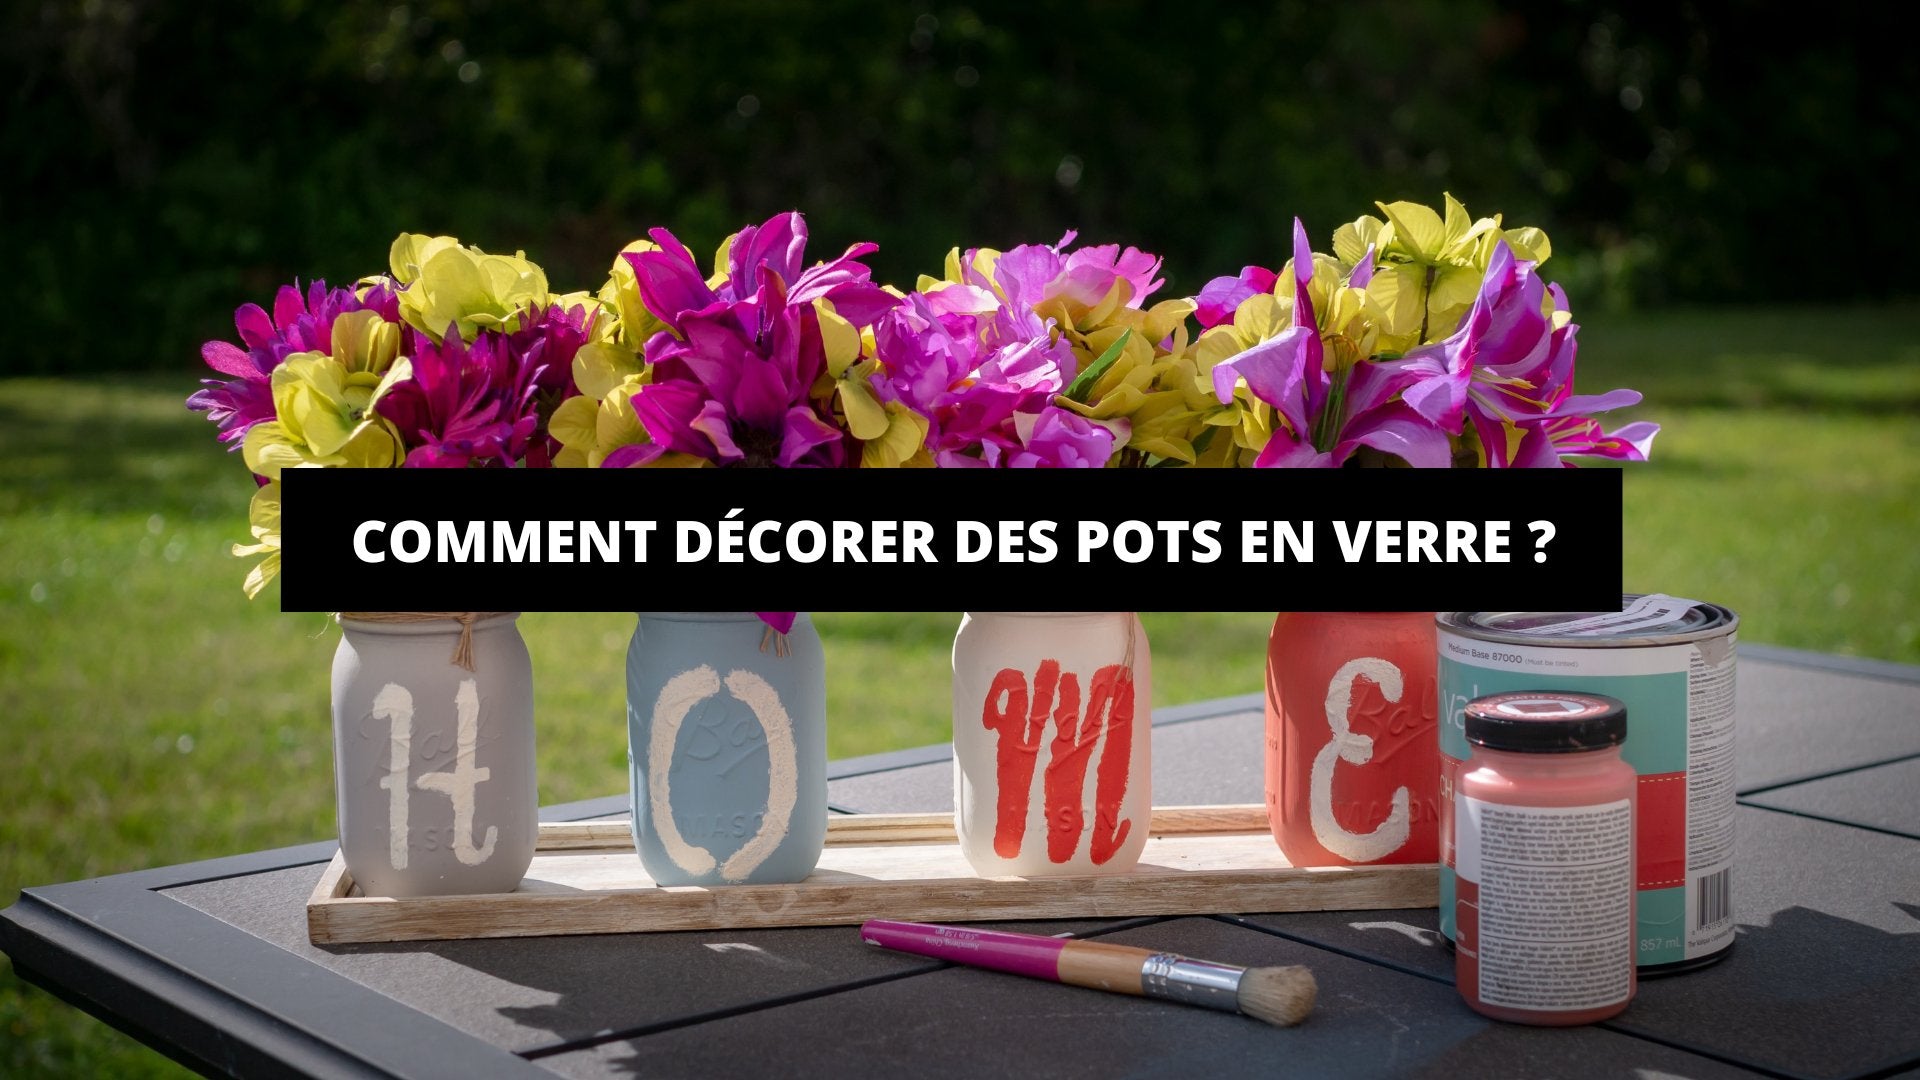 DIY déco : fabriquer des fleurs avec des boutons - Marie Claire